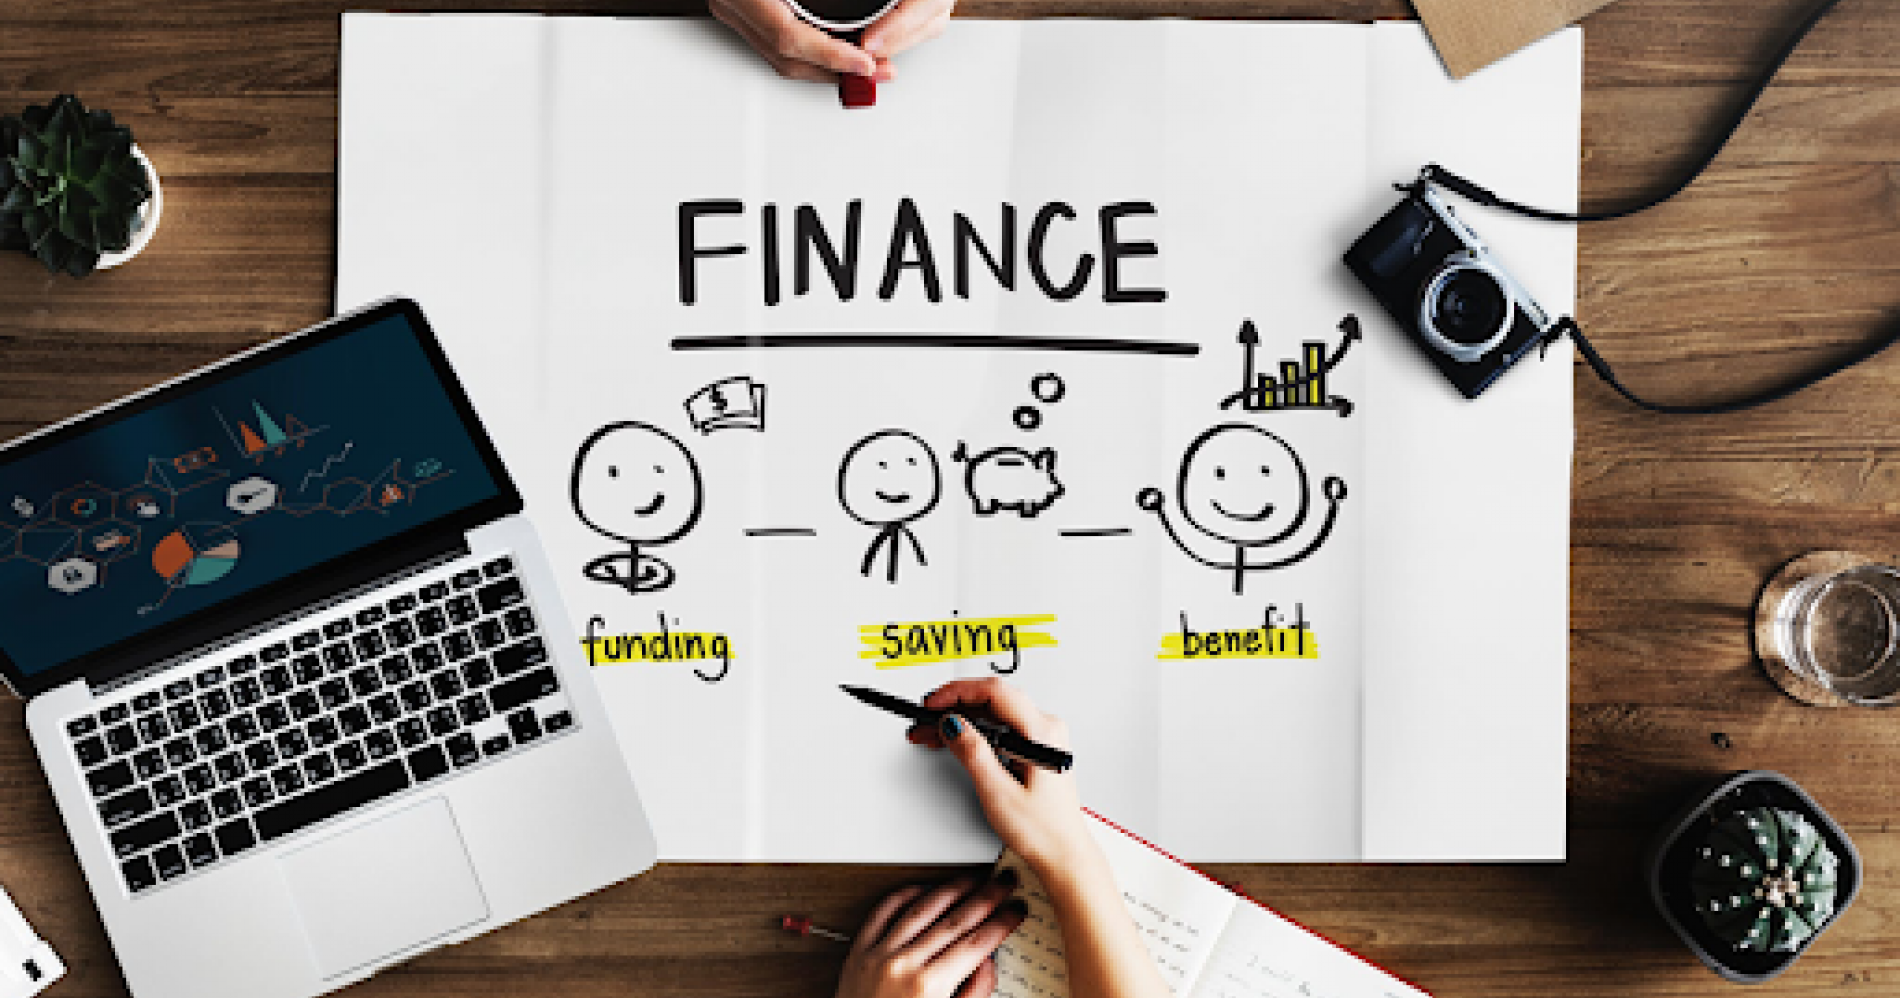 Manajemen keuangan melibatkan kemampuan kita untuk mengatur pendapatan, tabungan dan investasi (sumber: http://excedinstitute.com/courses/financial-management/)